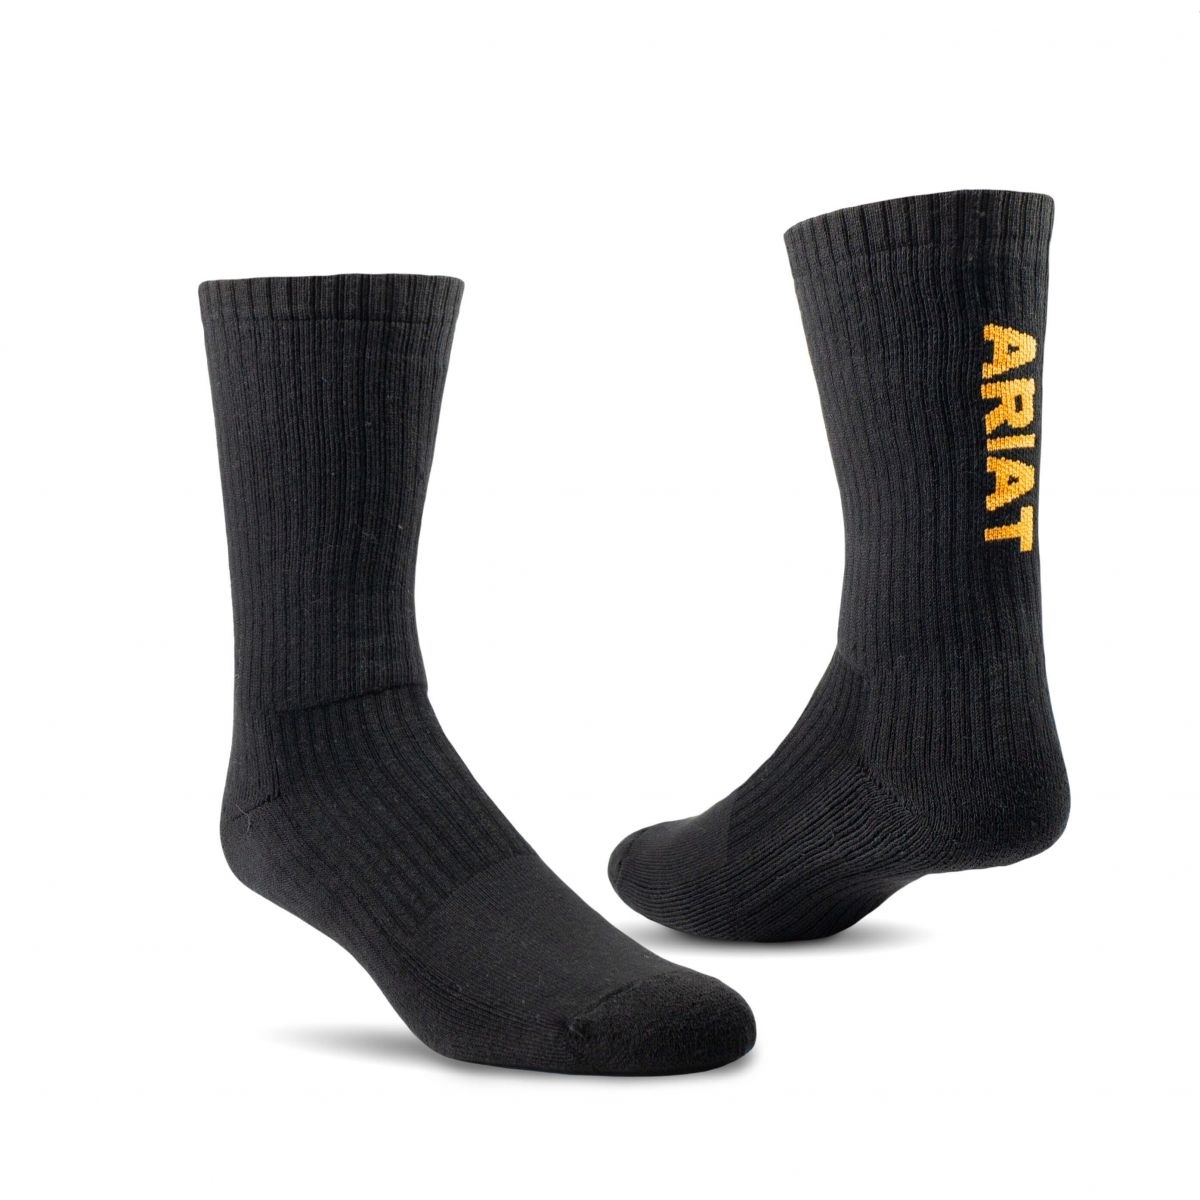 ARIAT Unisex Premium Ringspun Cotton Crew Work Socks Black 3-Pair Pack - AR2239-002 BLACK - BLACK, Medium